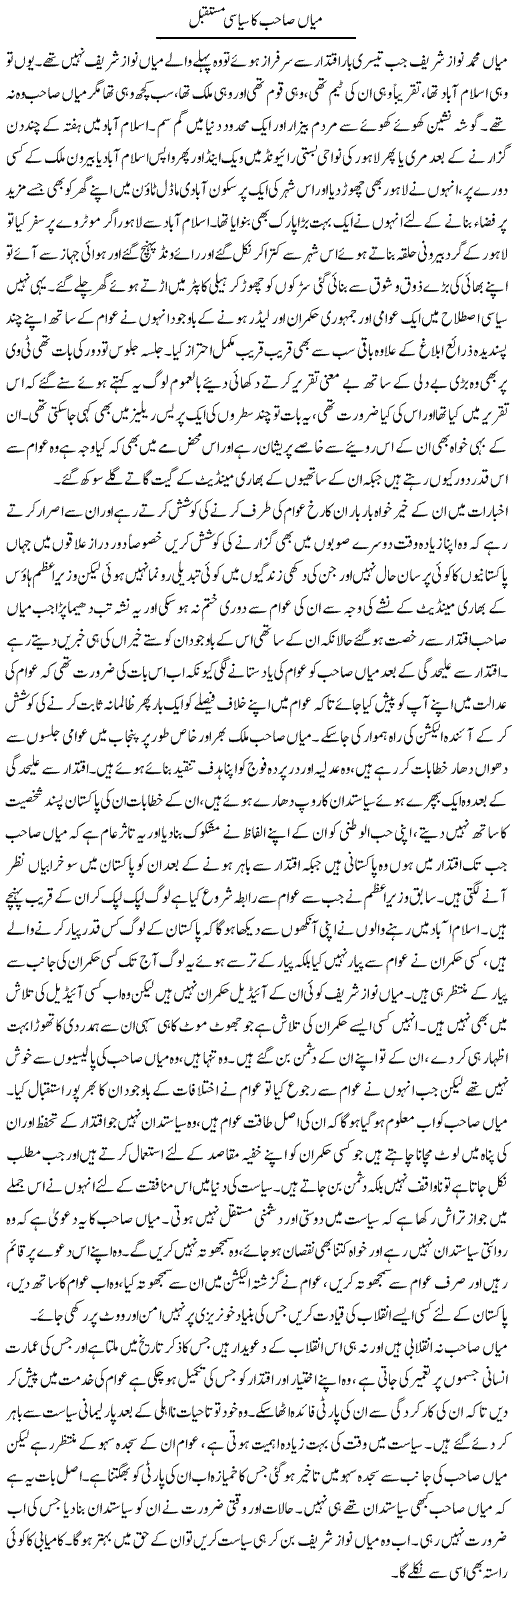 Mian Sahib Ka Siyasi Mustaqbil | Abdul Qadir Hassan | Daily Urdu Columns